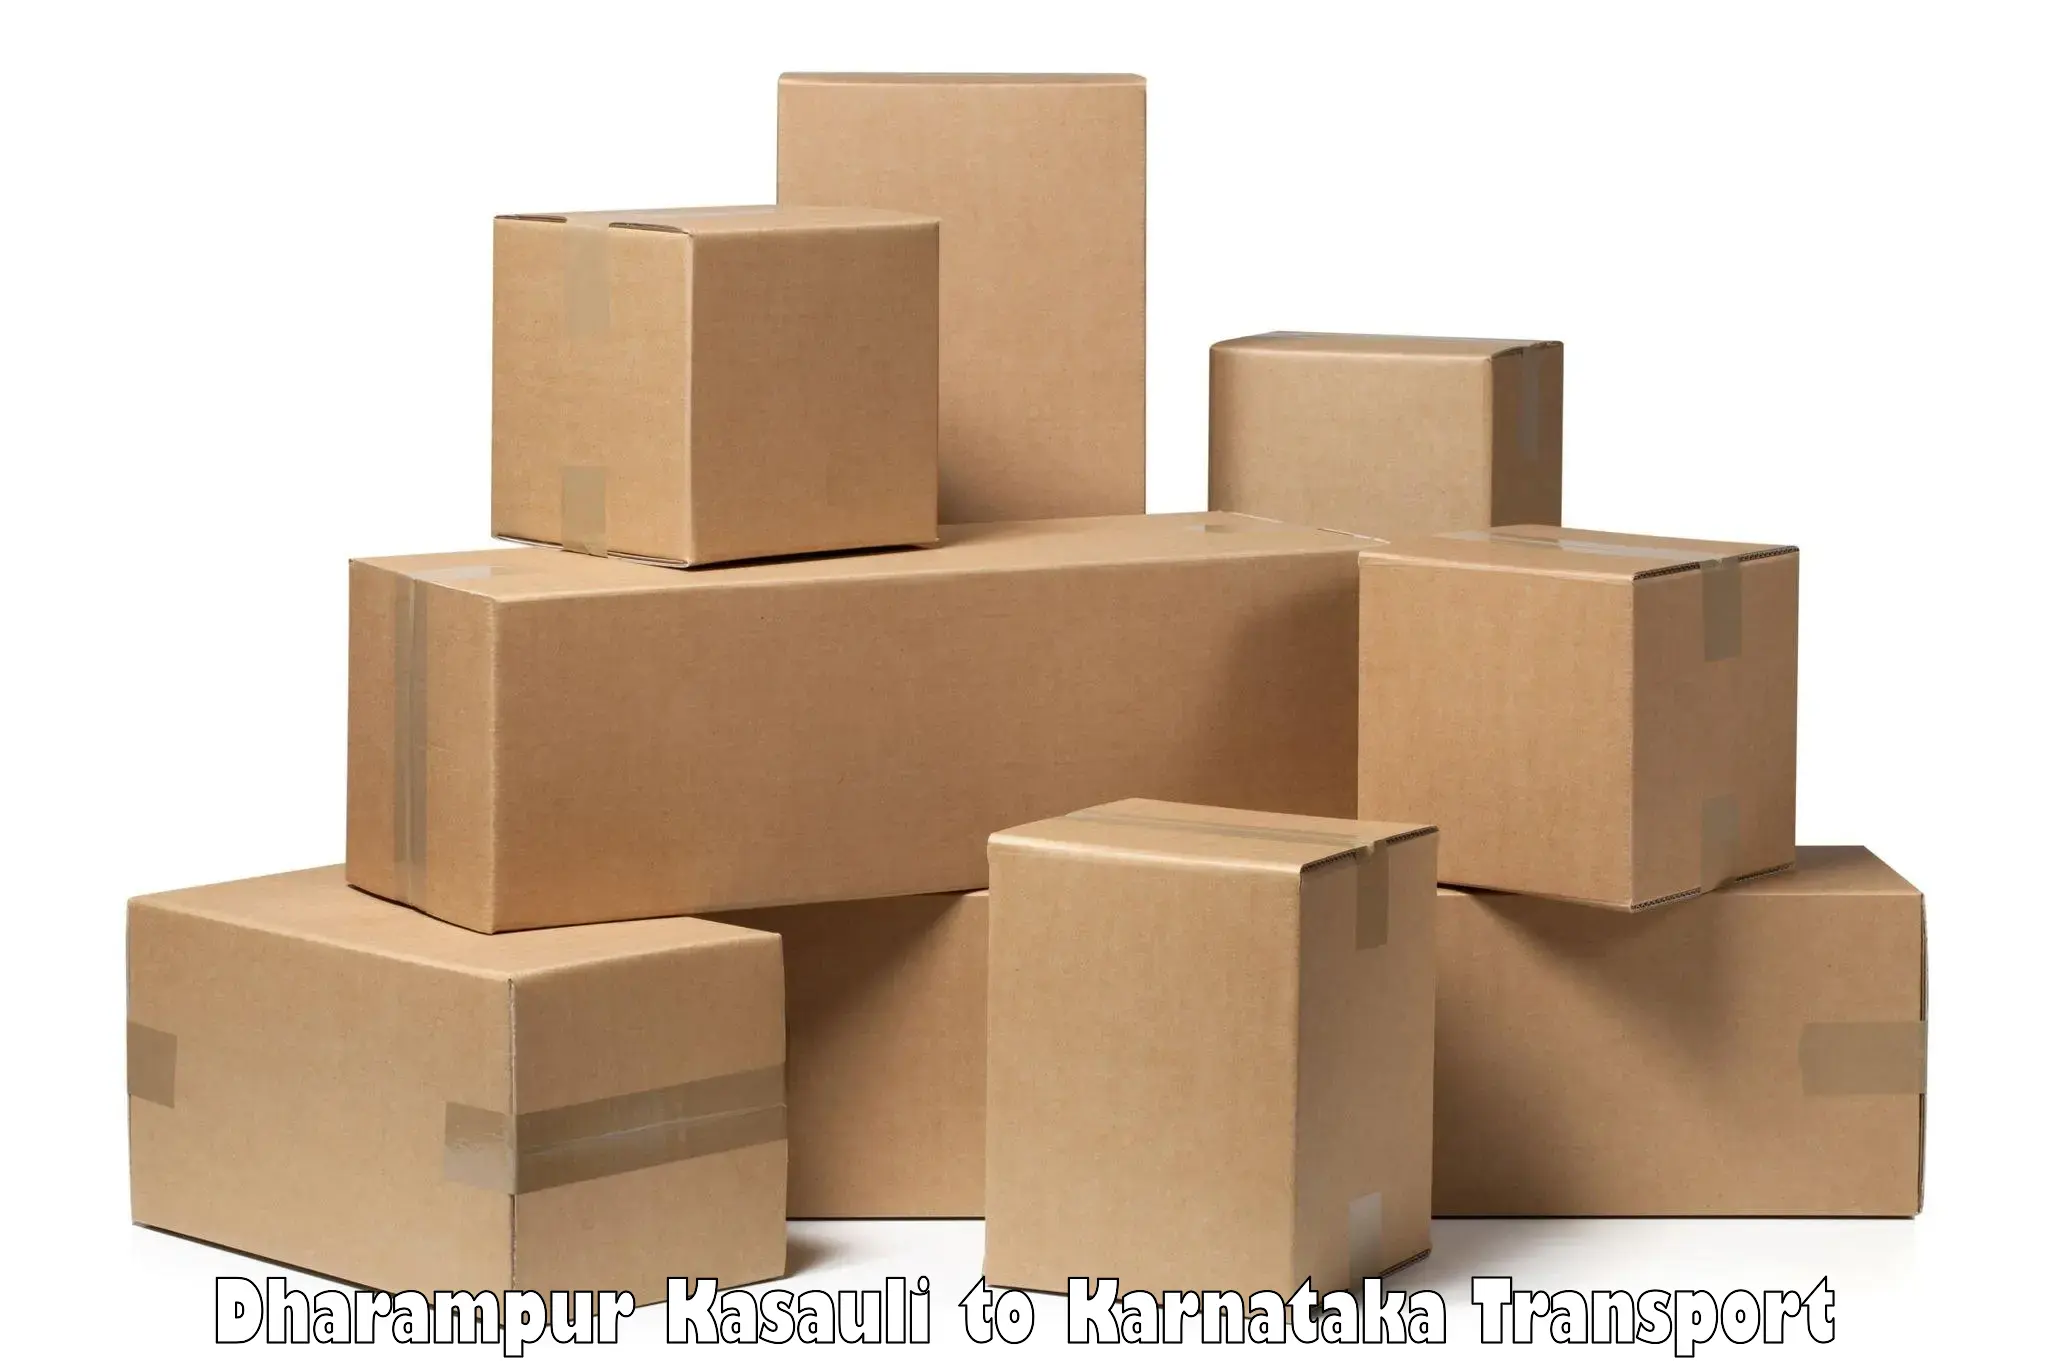 Furniture transport service Dharampur Kasauli to Hangal